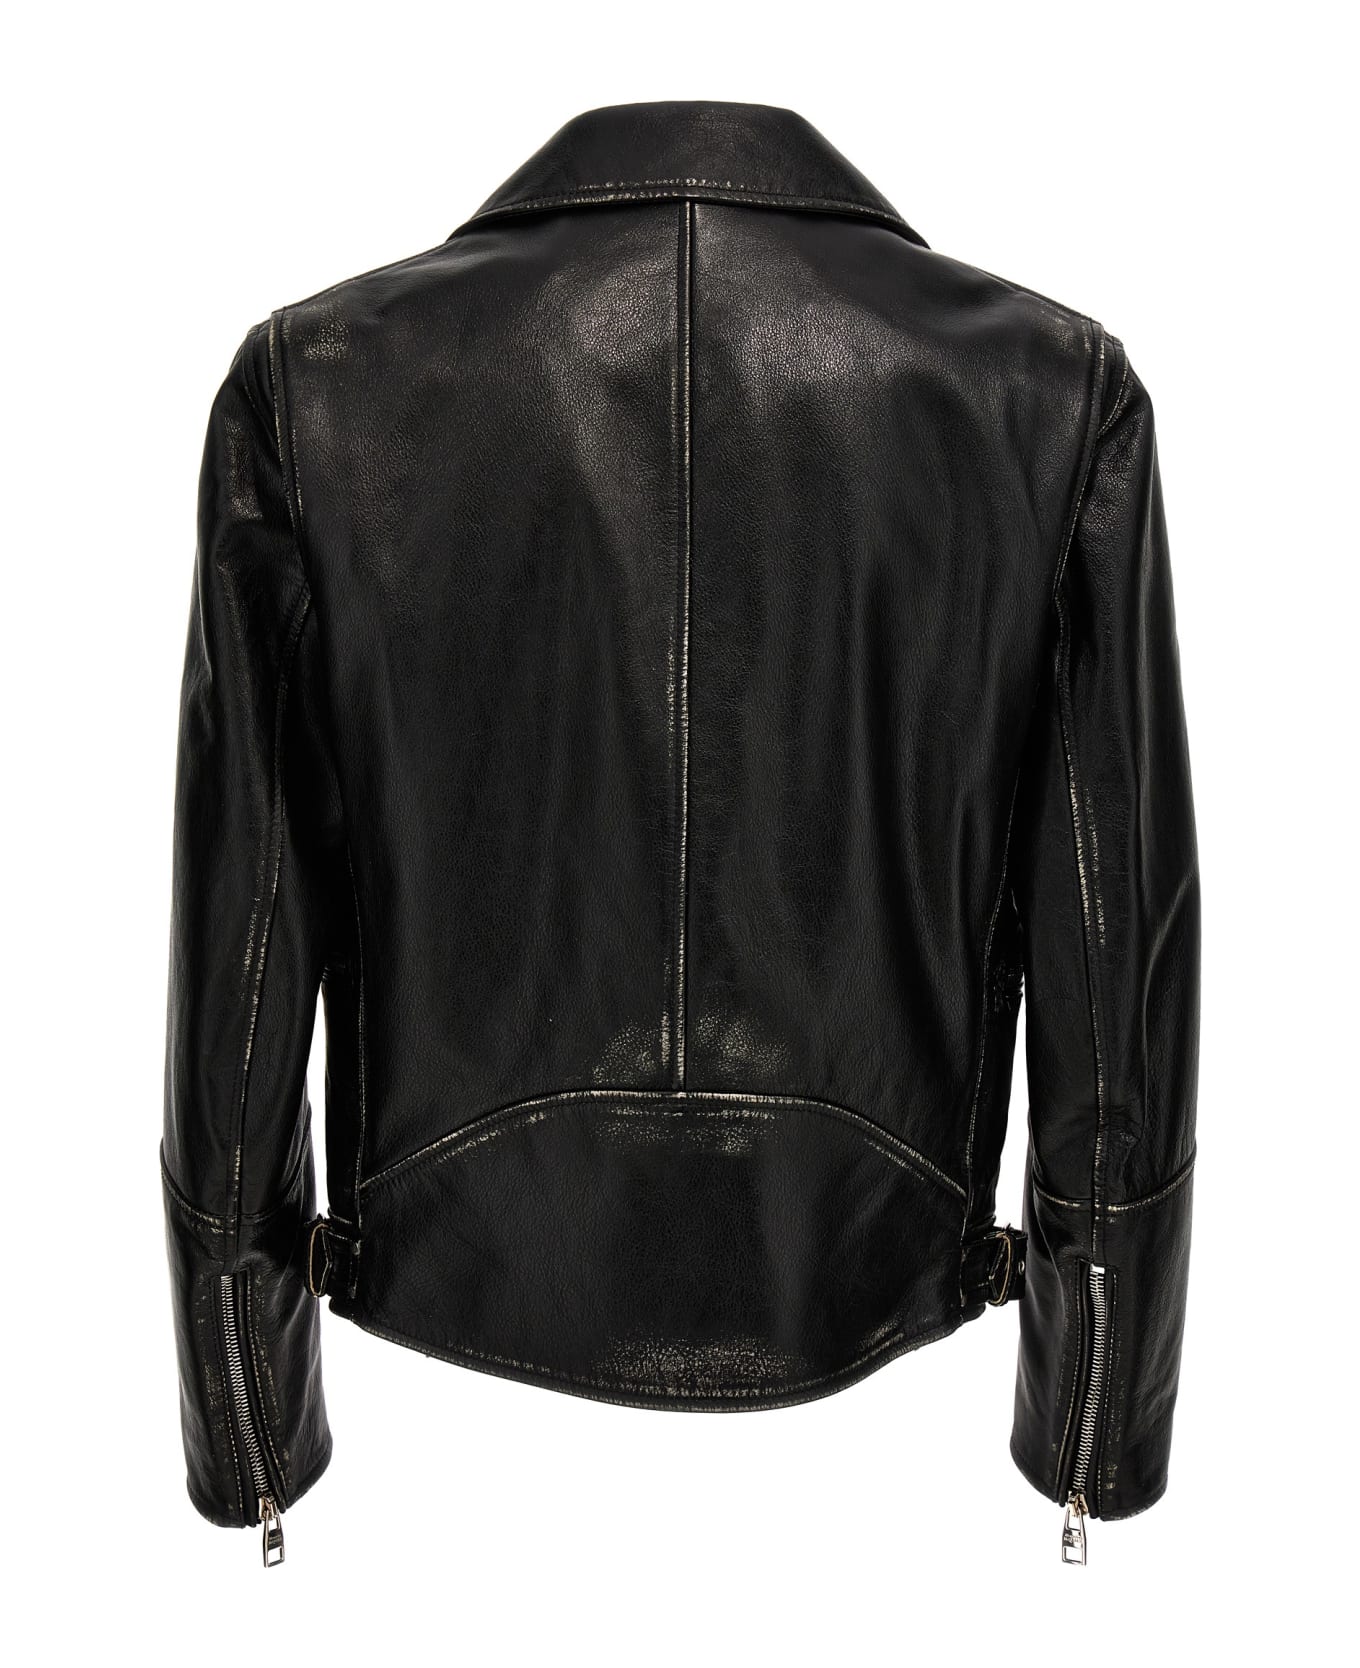 Alexander McQueen Biker Jacket - Black